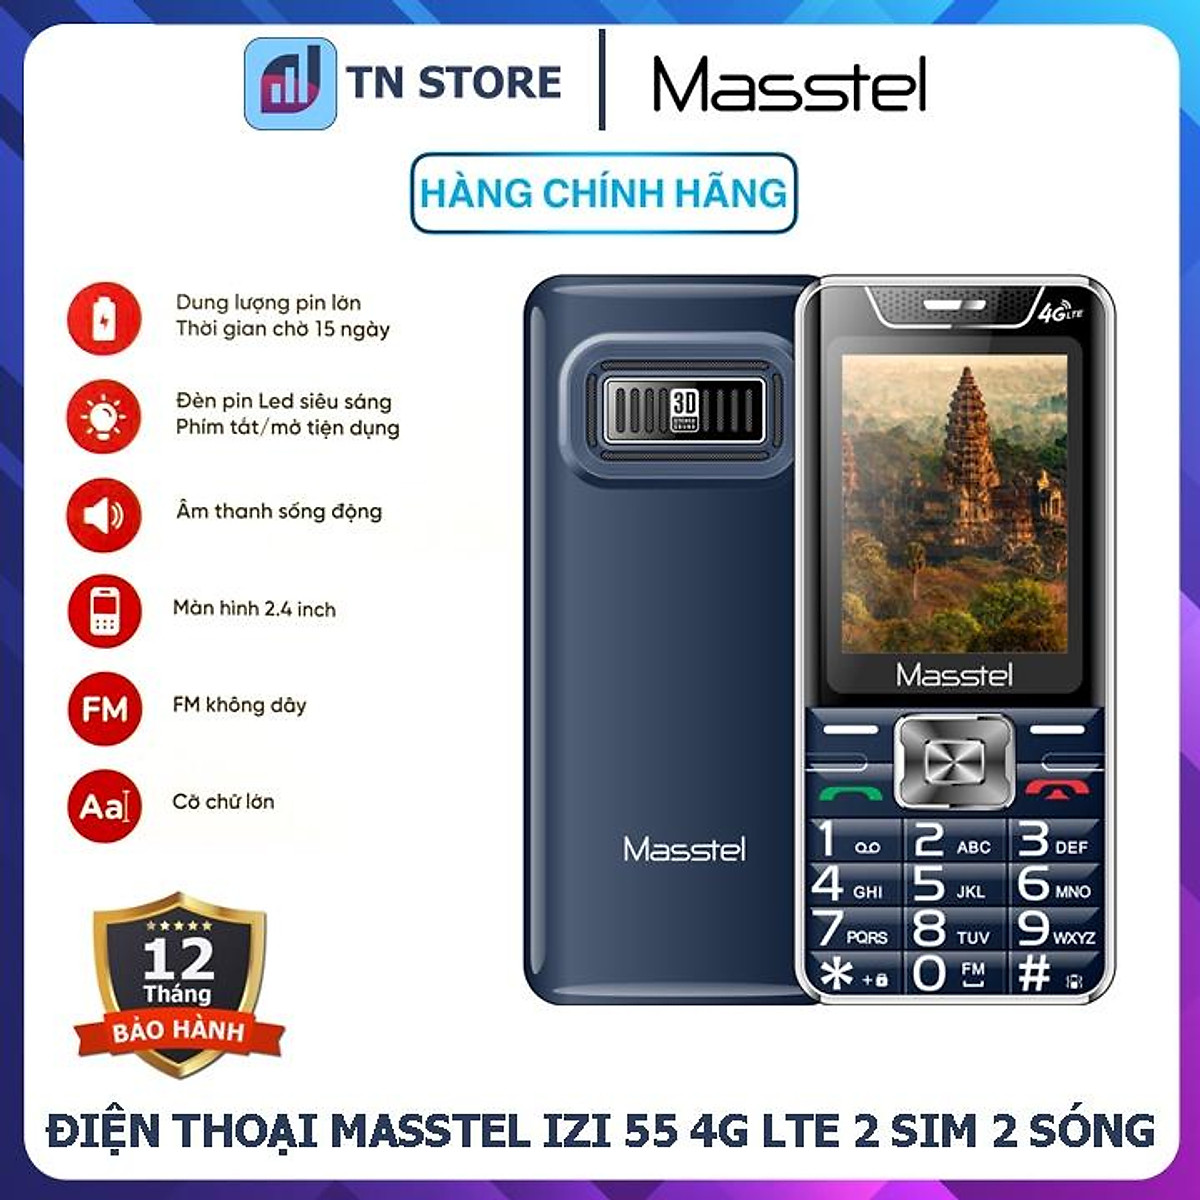 Masstel IZI 55 4G LTE - Nếu bạn đang muốn tìm một chiếc điện thoại đa năng với màn hình lớn và hỗ trợ 4G, thì Masstel IZI 55 4G LTE chính là sản phẩm bạn đang tìm kiếm. Với thiết kế đơn giản, giao diện thân thiện và các tính năng tiên tiến, chiếc điện thoại này sẽ đưa bạn đến một trải nghiệm tuyệt vời. Hãy xem hình ảnh liên quan để cảm nhận thêm.